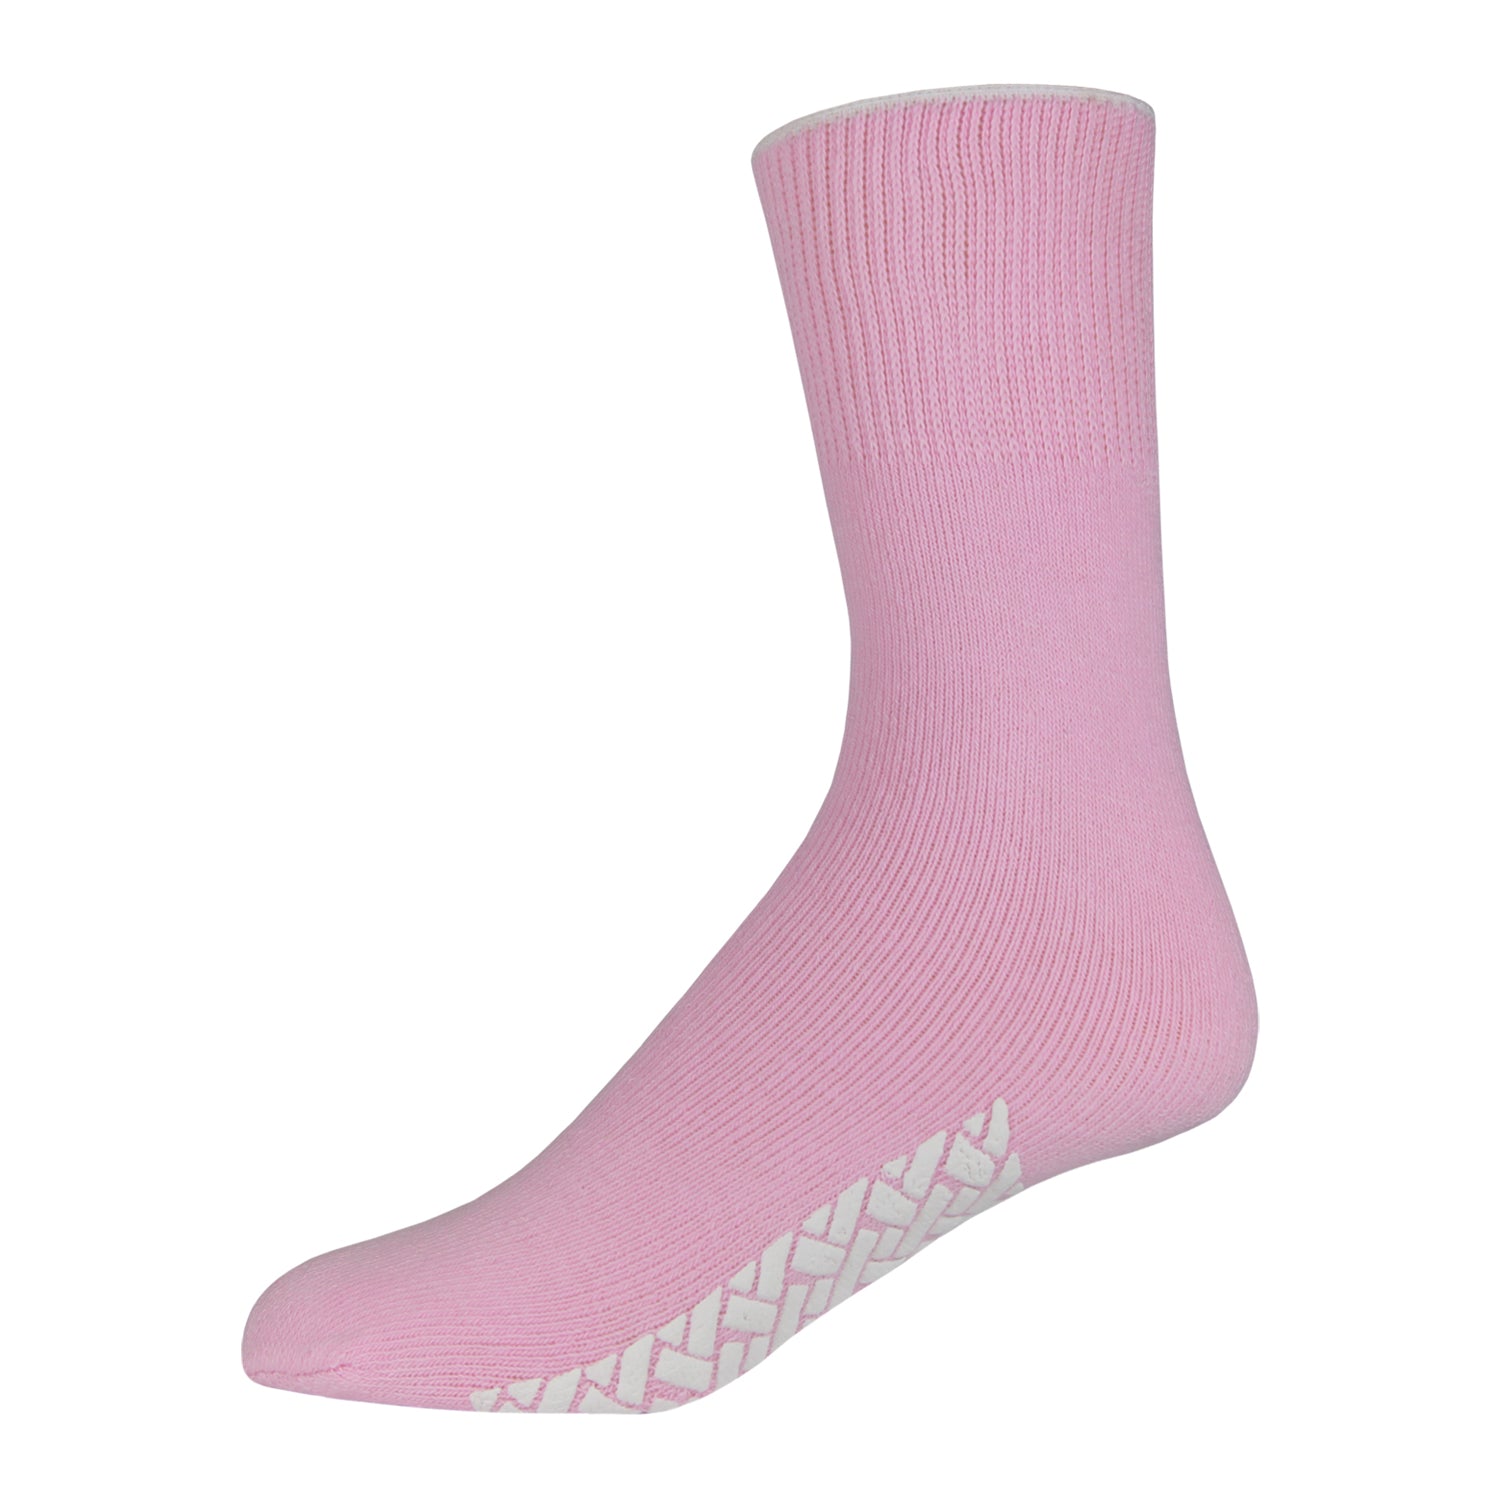 Men's Non Skid Diabetic Hospital Socks with Rubber Gripper Bottom